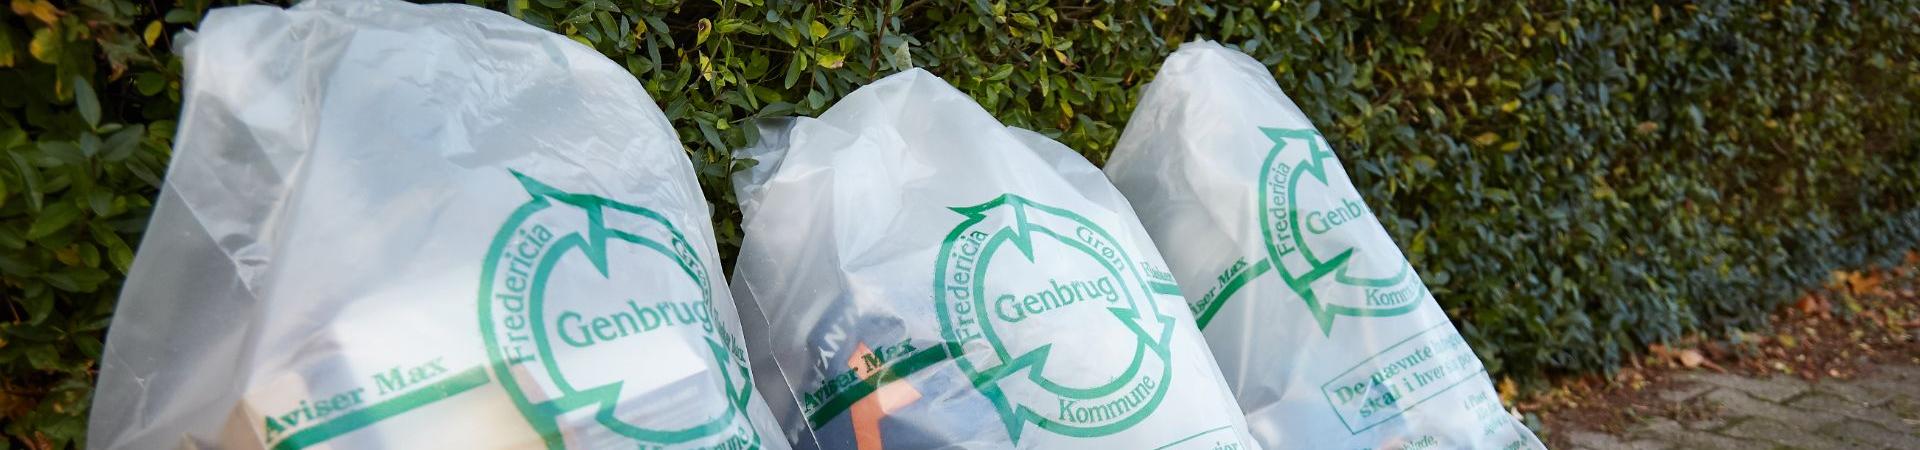 Tre klare sække med genbrugsmaterialer i som står foran en grøn hæk